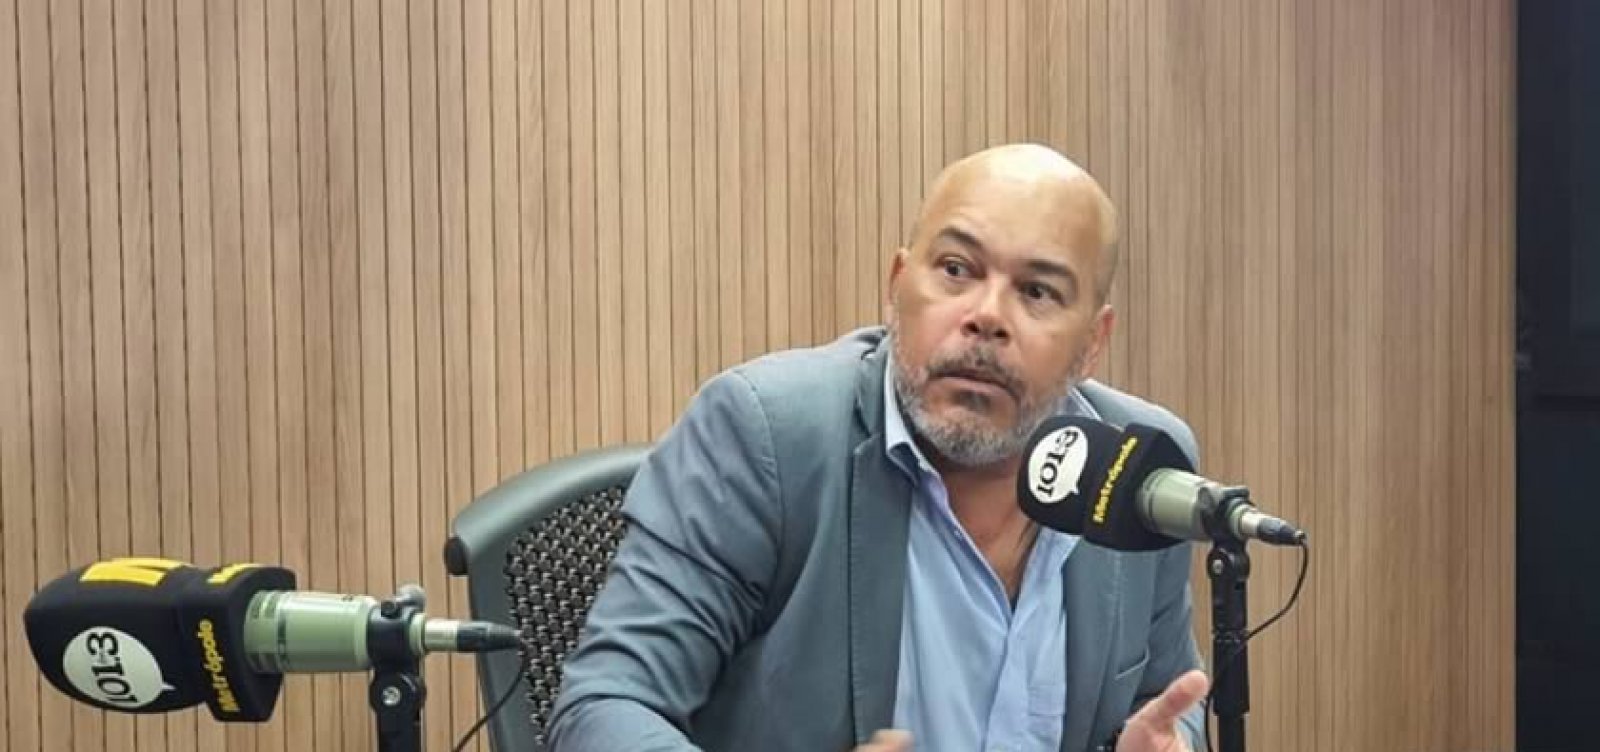 Sindicato da PF na Bahia ganha processo de Paulo Guedes e vai doar indenização a hospitais de Salvador